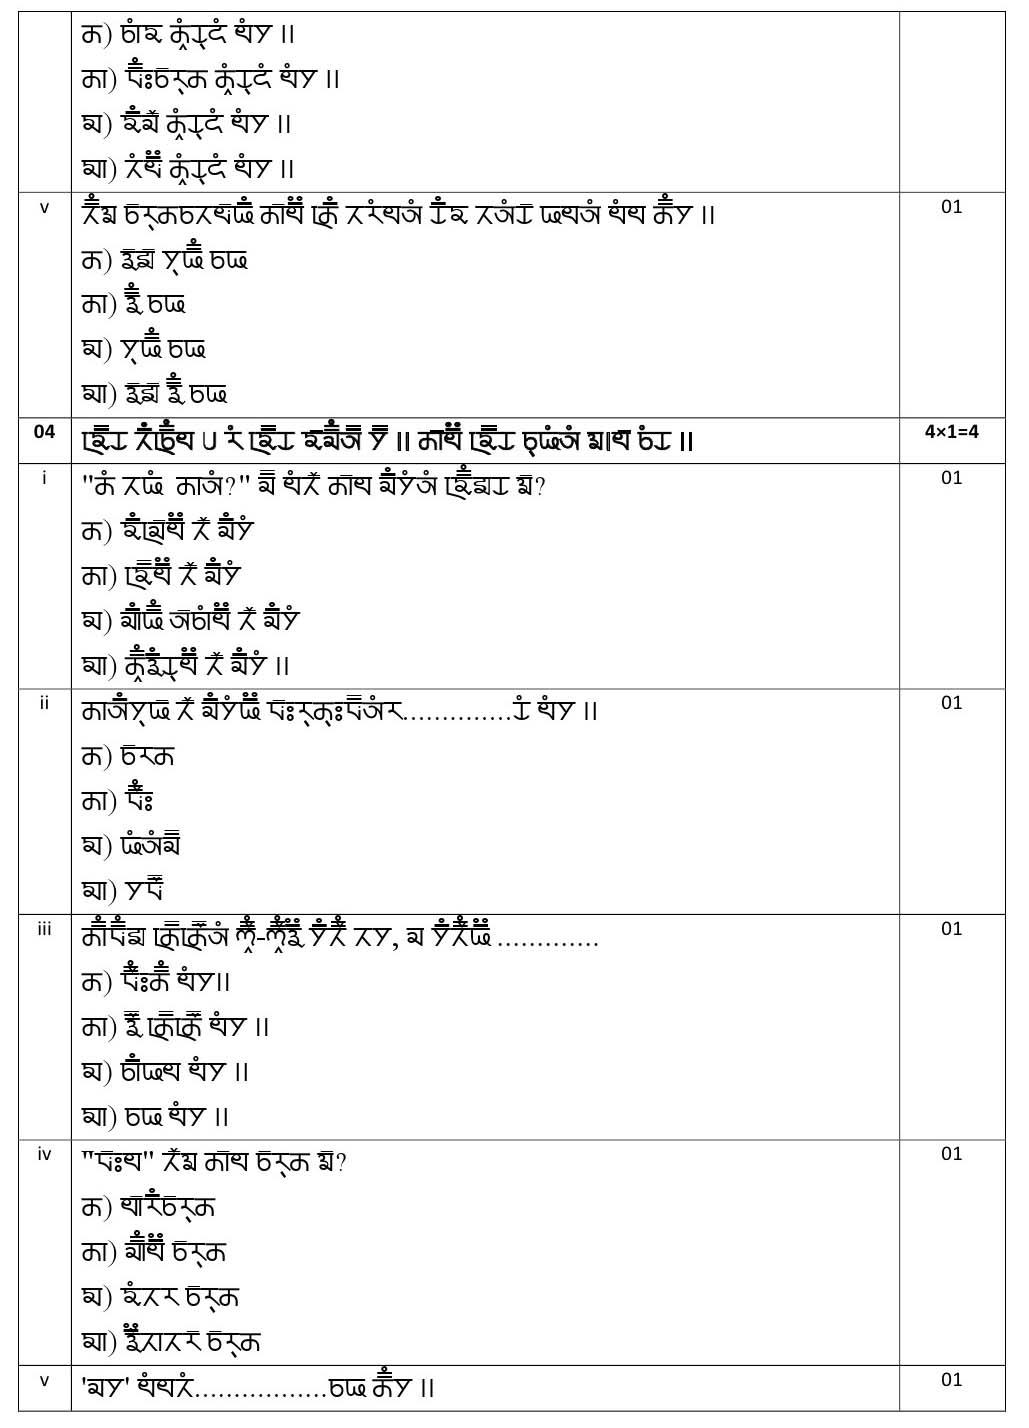 Gurung CBSE Class X Sample Question Paper 2020 21 - Image 7